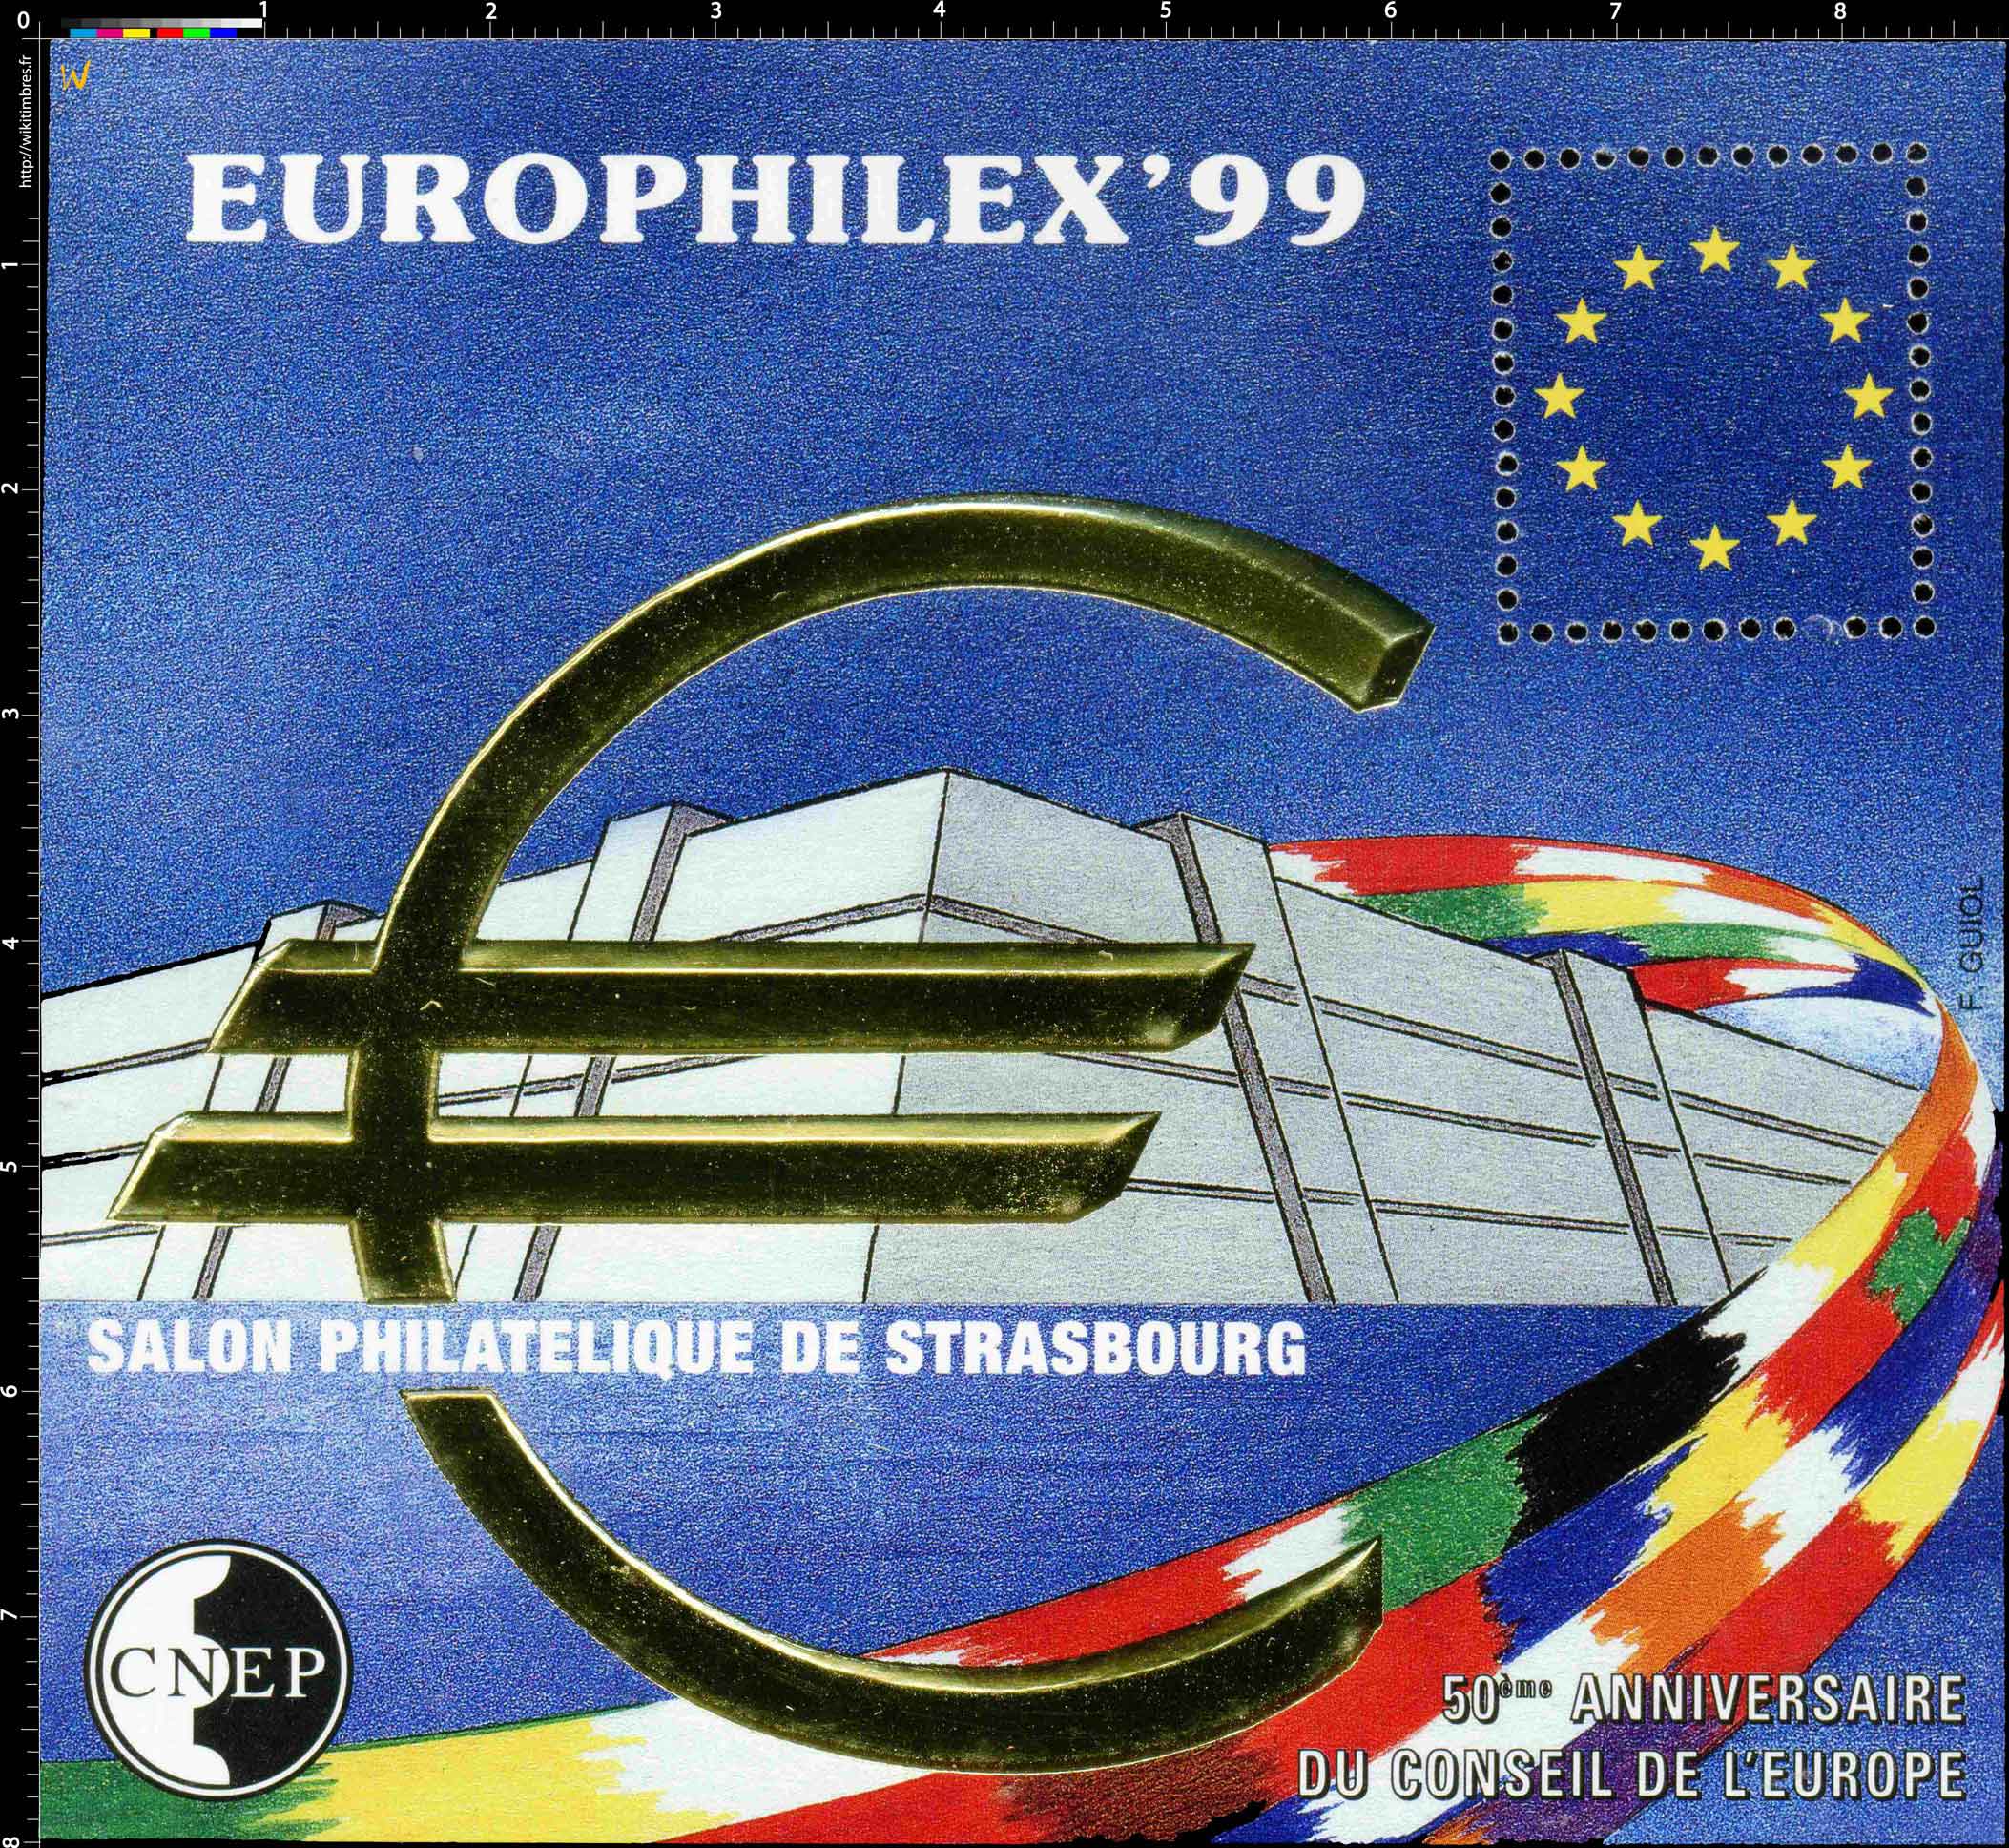 99 Europhilex Salon philatélique de Strasbourg 50e anniversaire du conseil de l'Europe CNEP